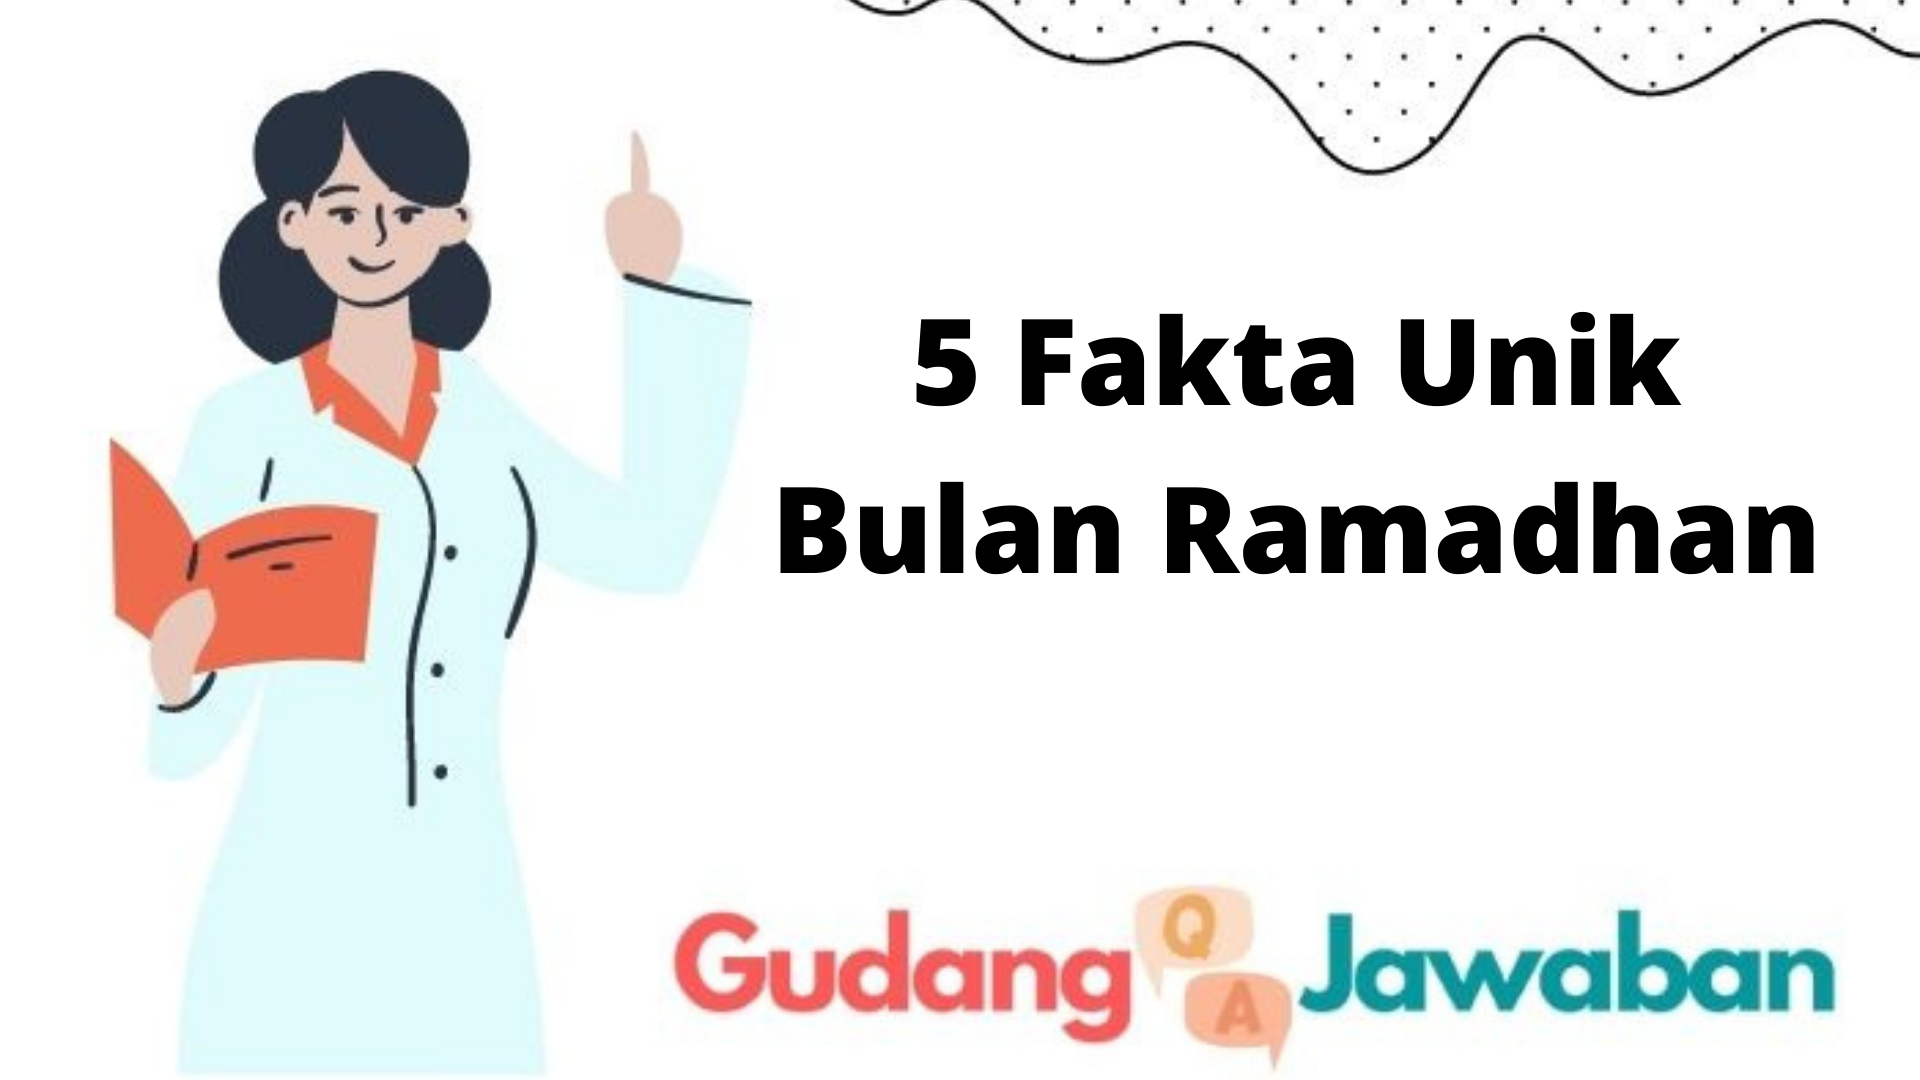 5 Fakta Unik Bulan Ramadhan